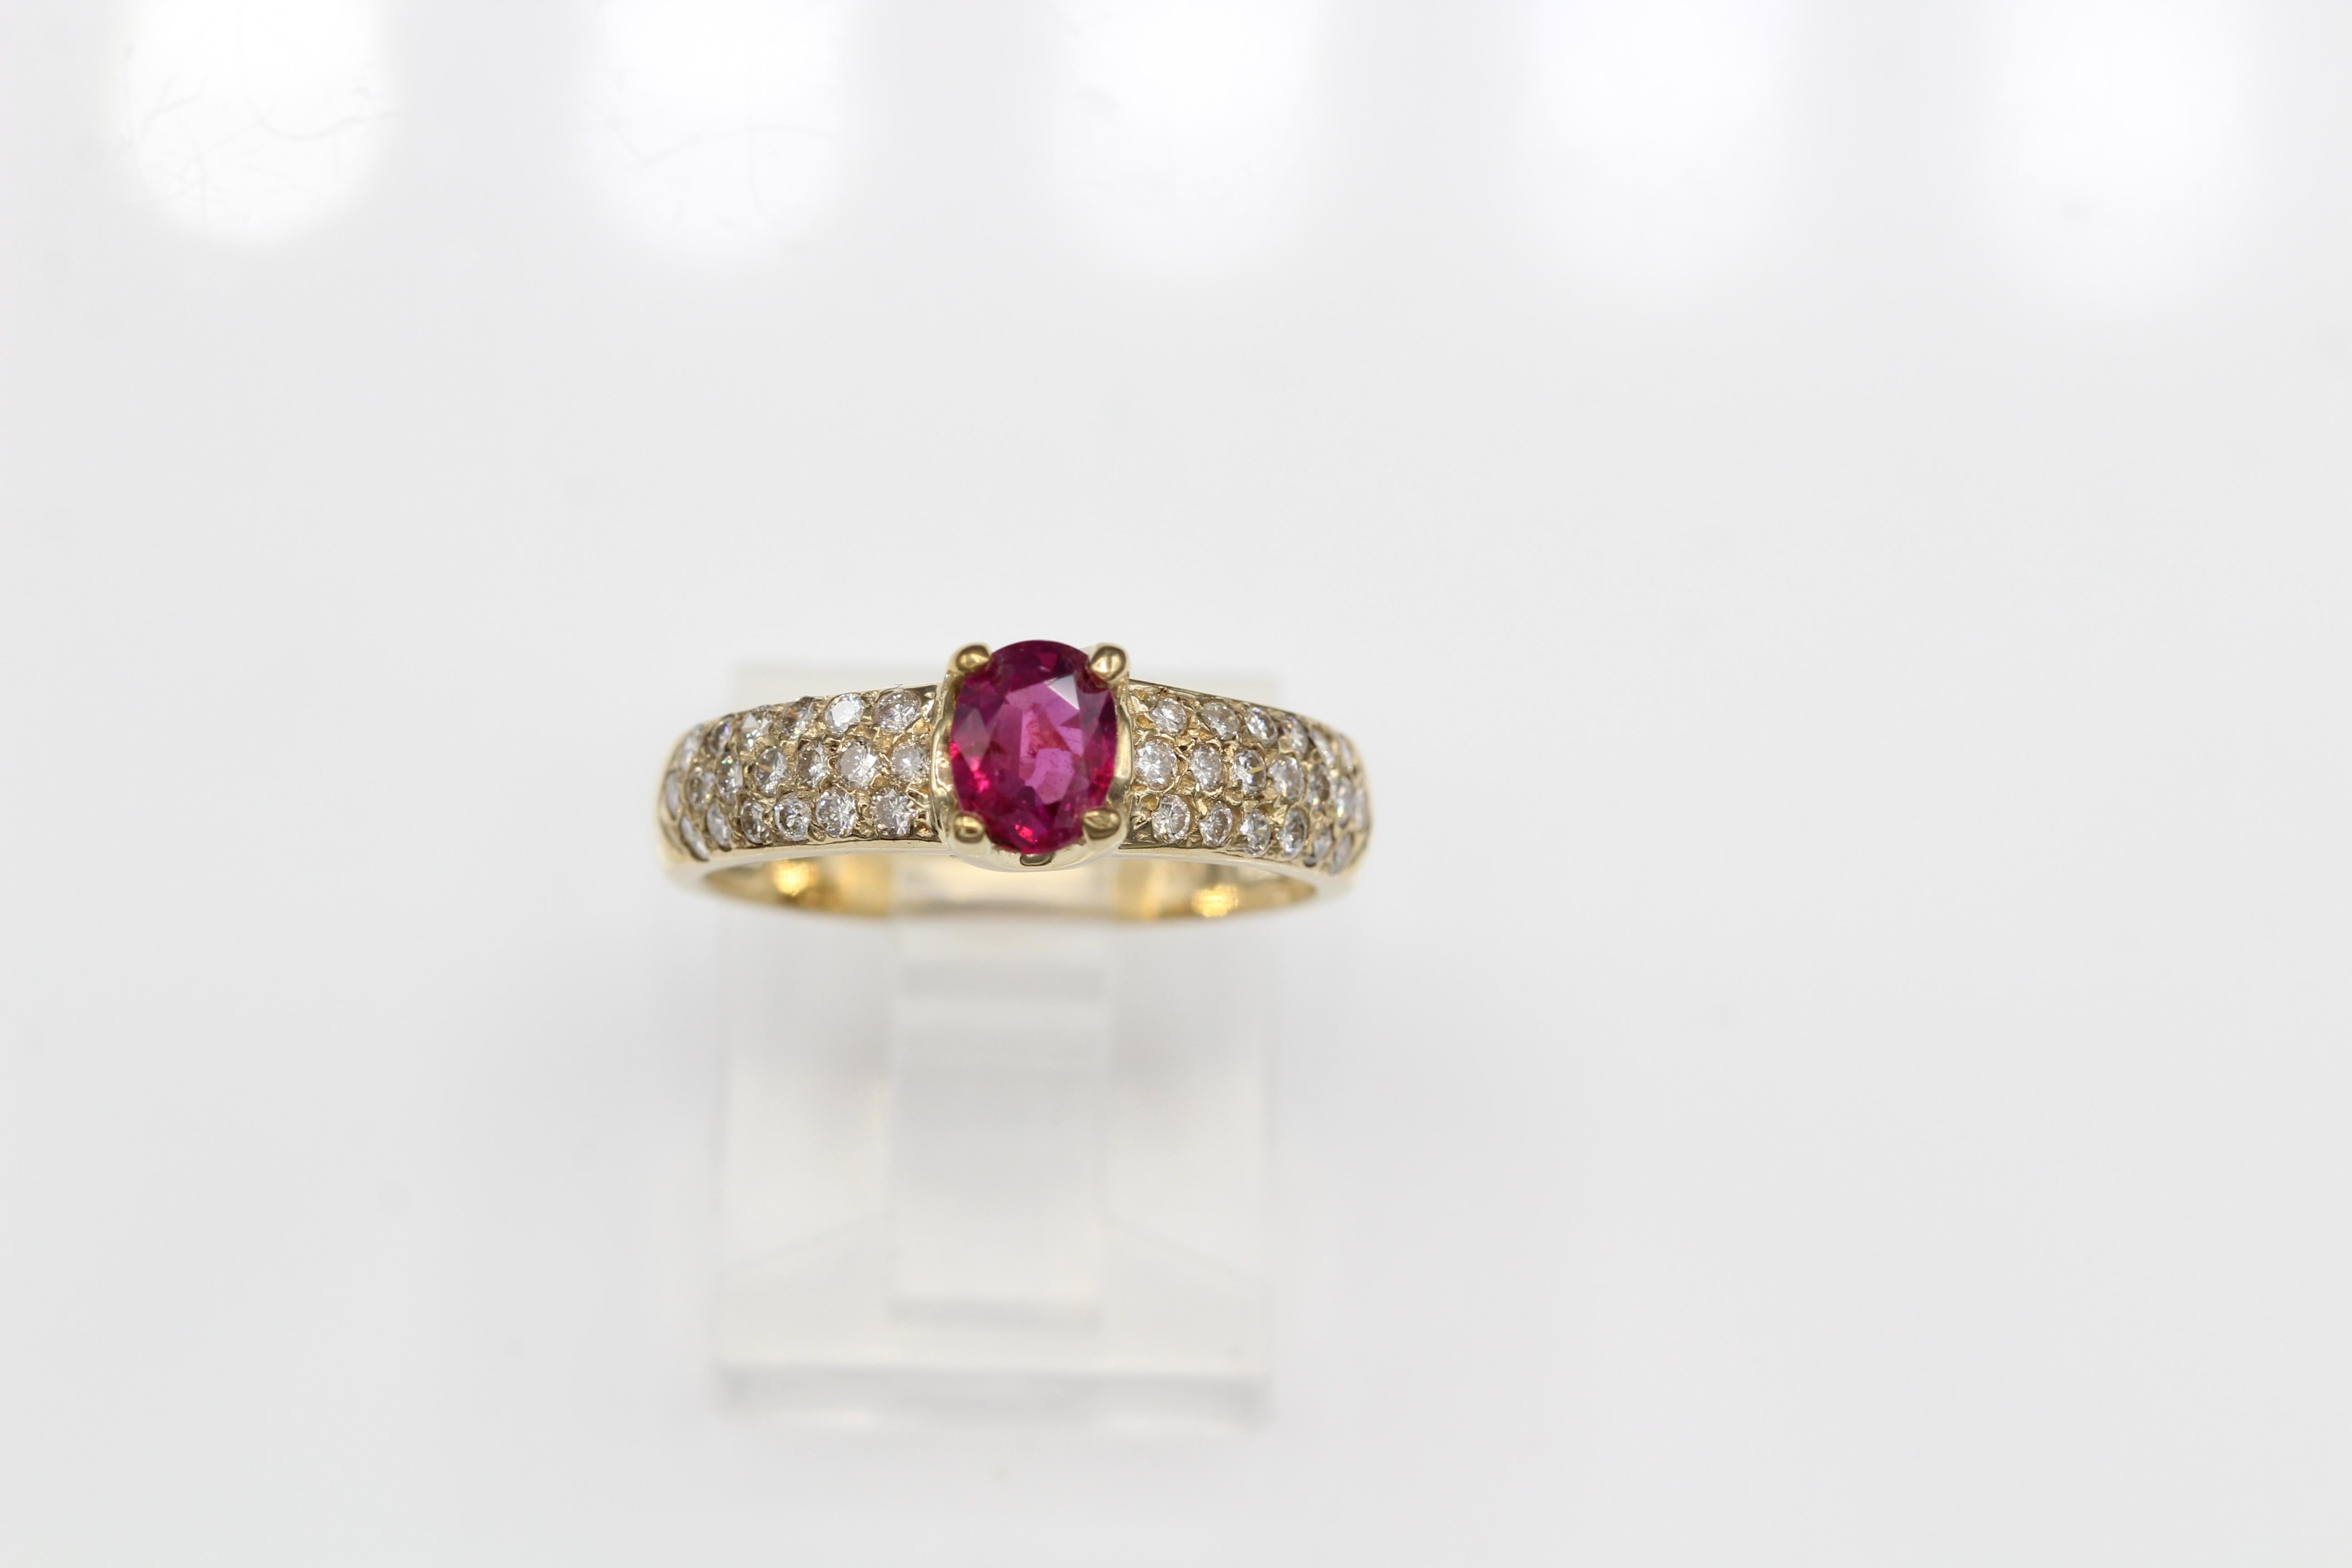 Bague classique en rubis - Le rubis fait 0,65 carat et le diamant 0,50 carat GH-VS.
or jaune 14K 2.70 Grammes, Taille du doigt 6.5
Toutes les pierres naturelles